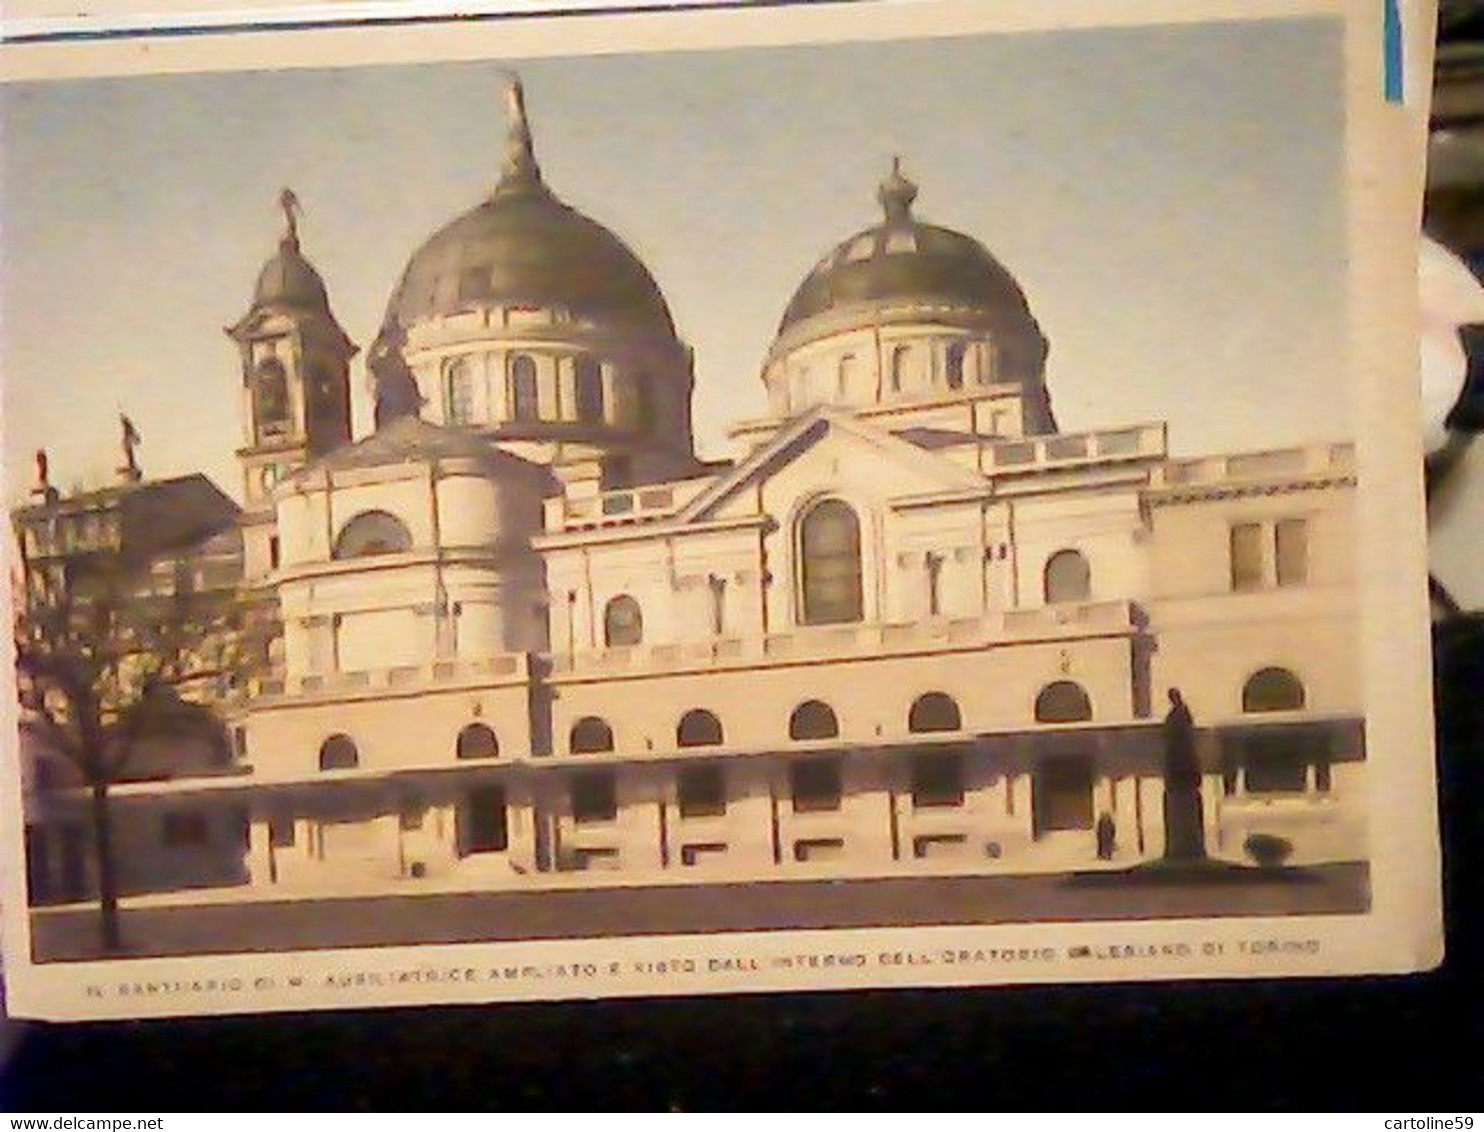 Santuario Di M. Ausiliatrice Ampliato E Visto Dall'interno Dell'oratorio Salesiano Di Torino N1940  IZ4862 - Sammlungen & Lose